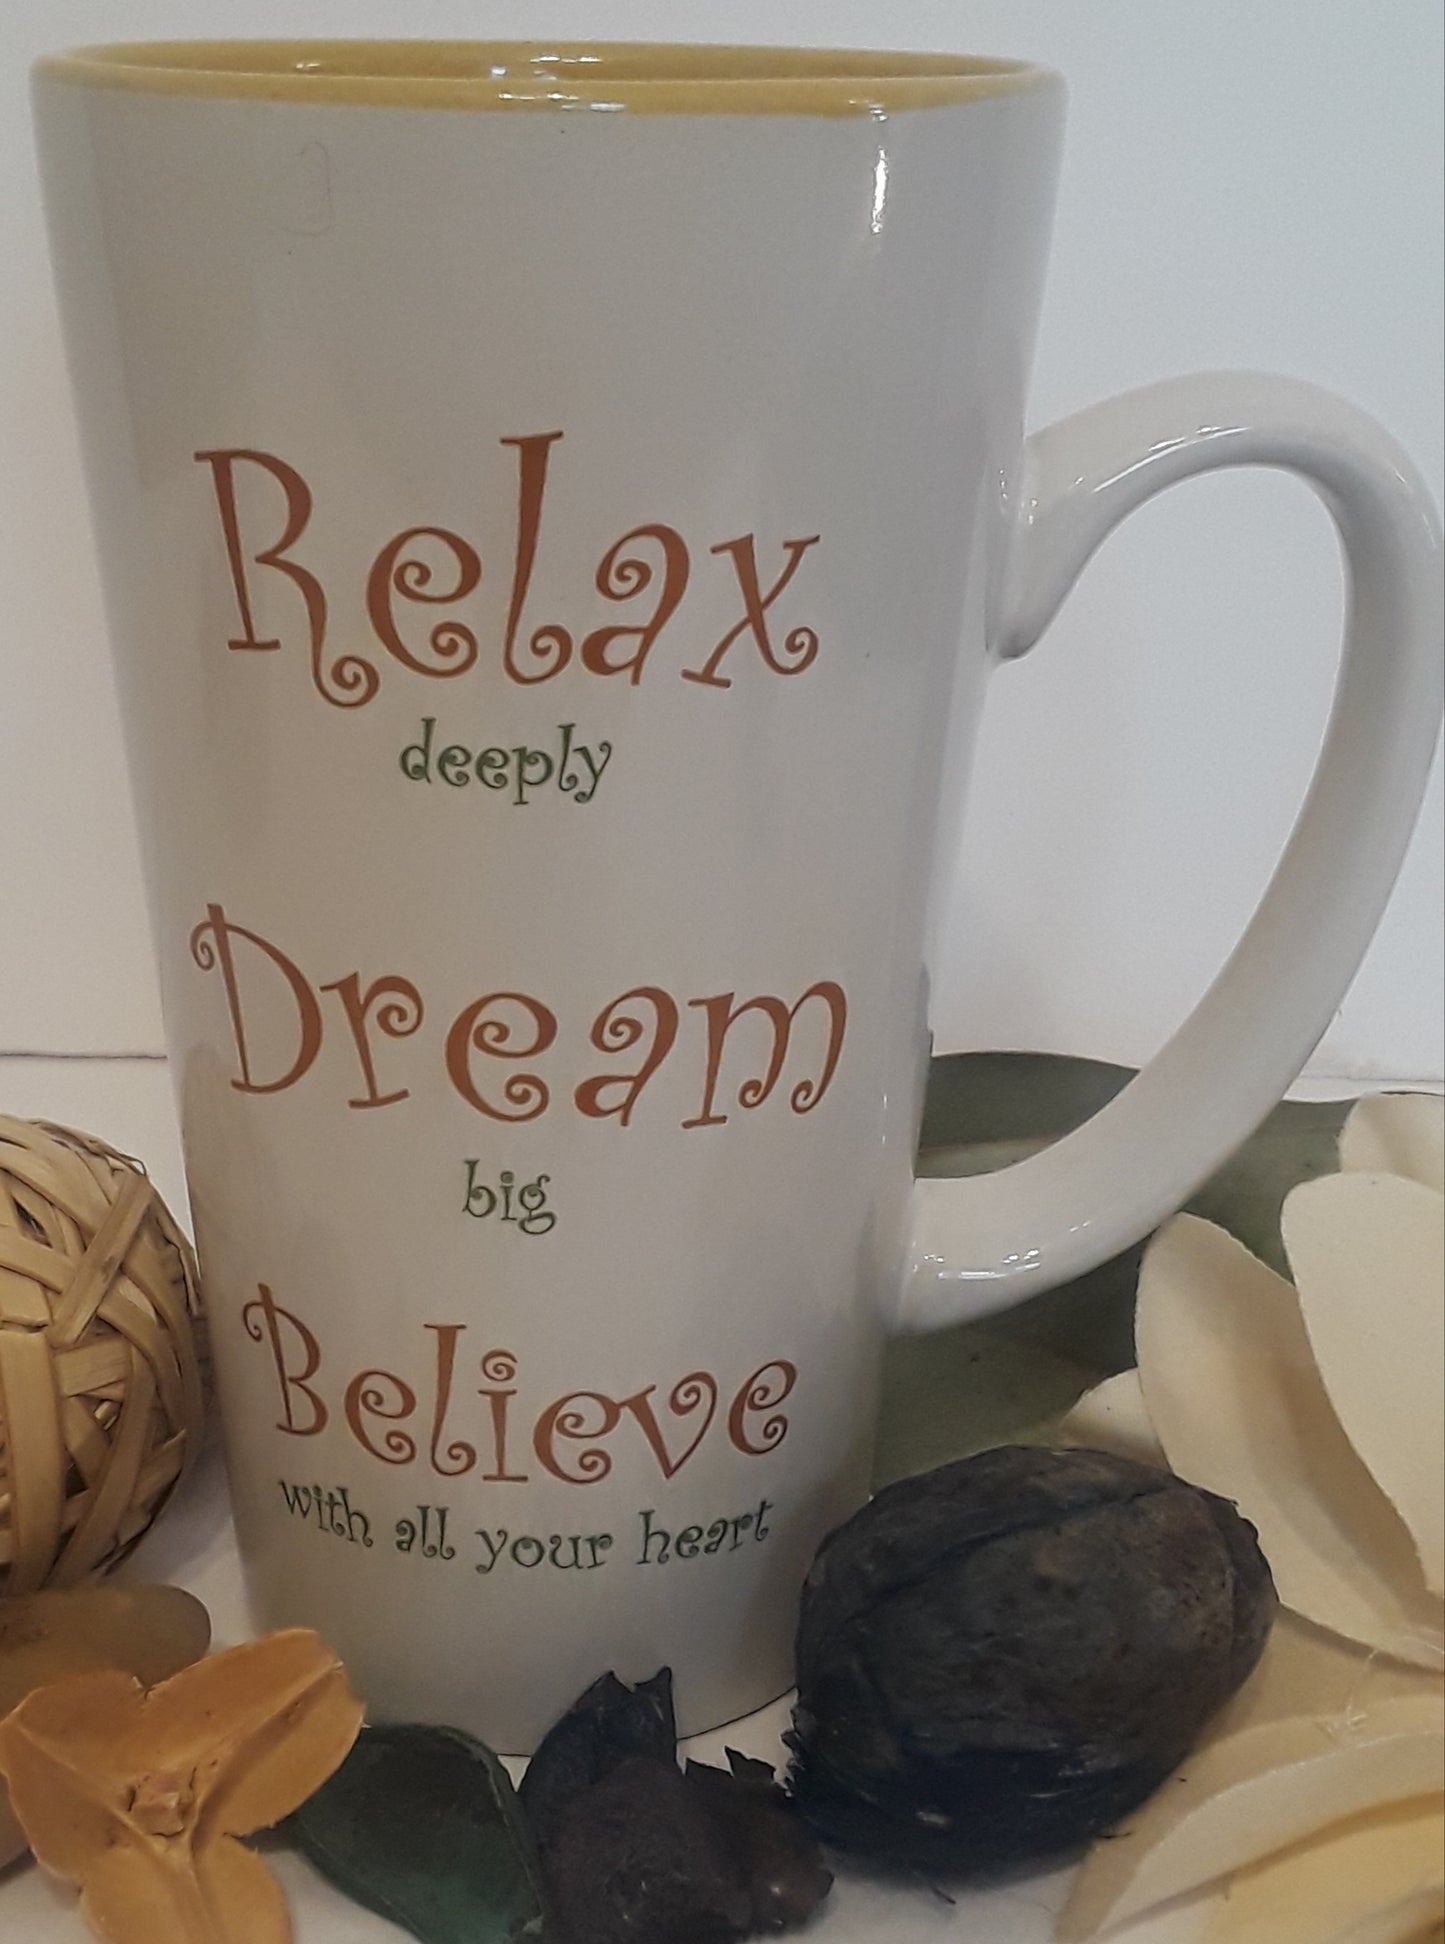 Relax Dream Believe Mug 16oz